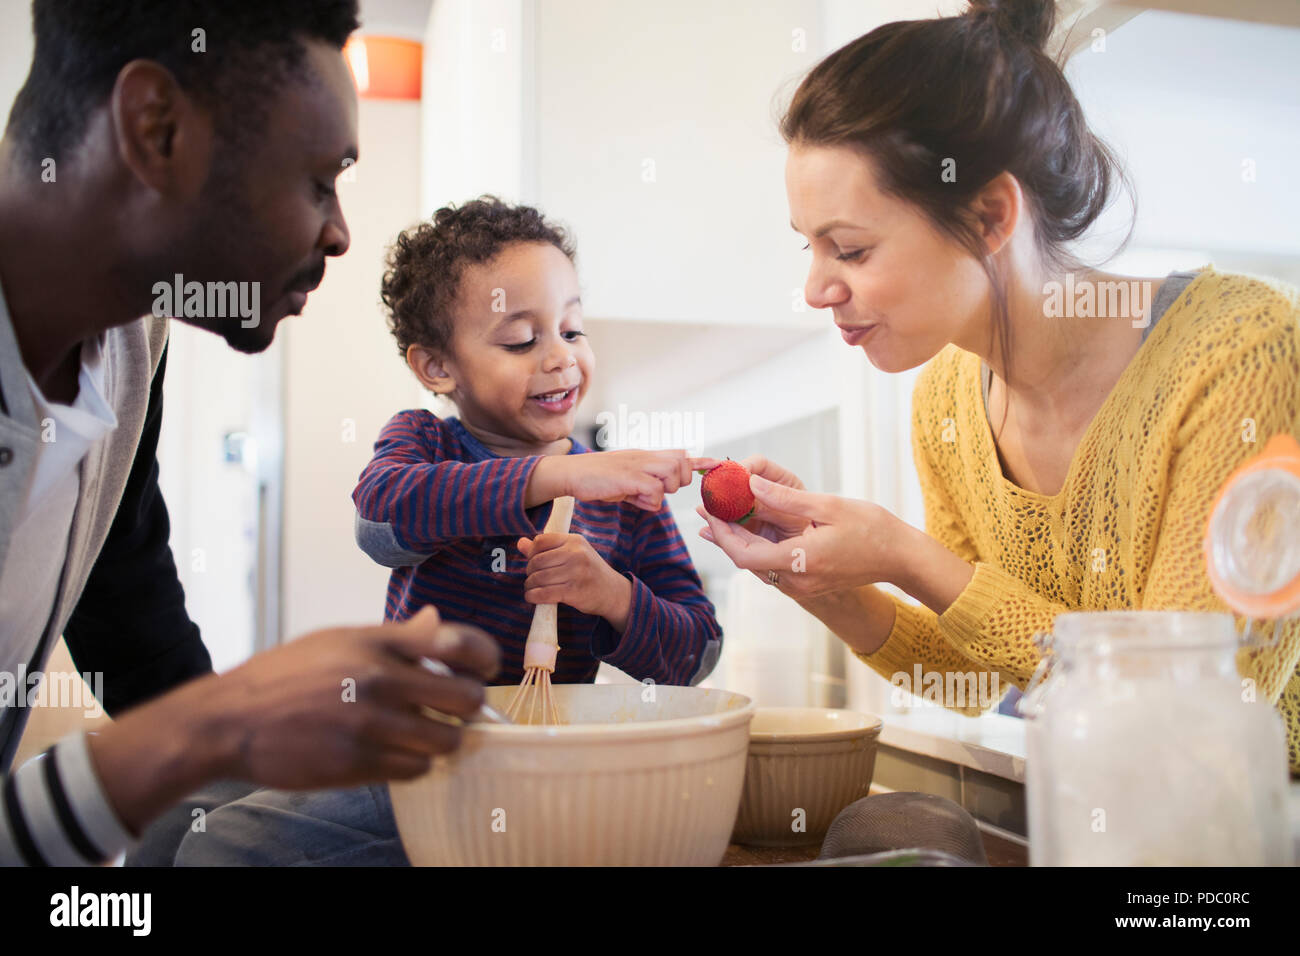 Les parents et les curieux petit garçon baking in kitchen Banque D'Images